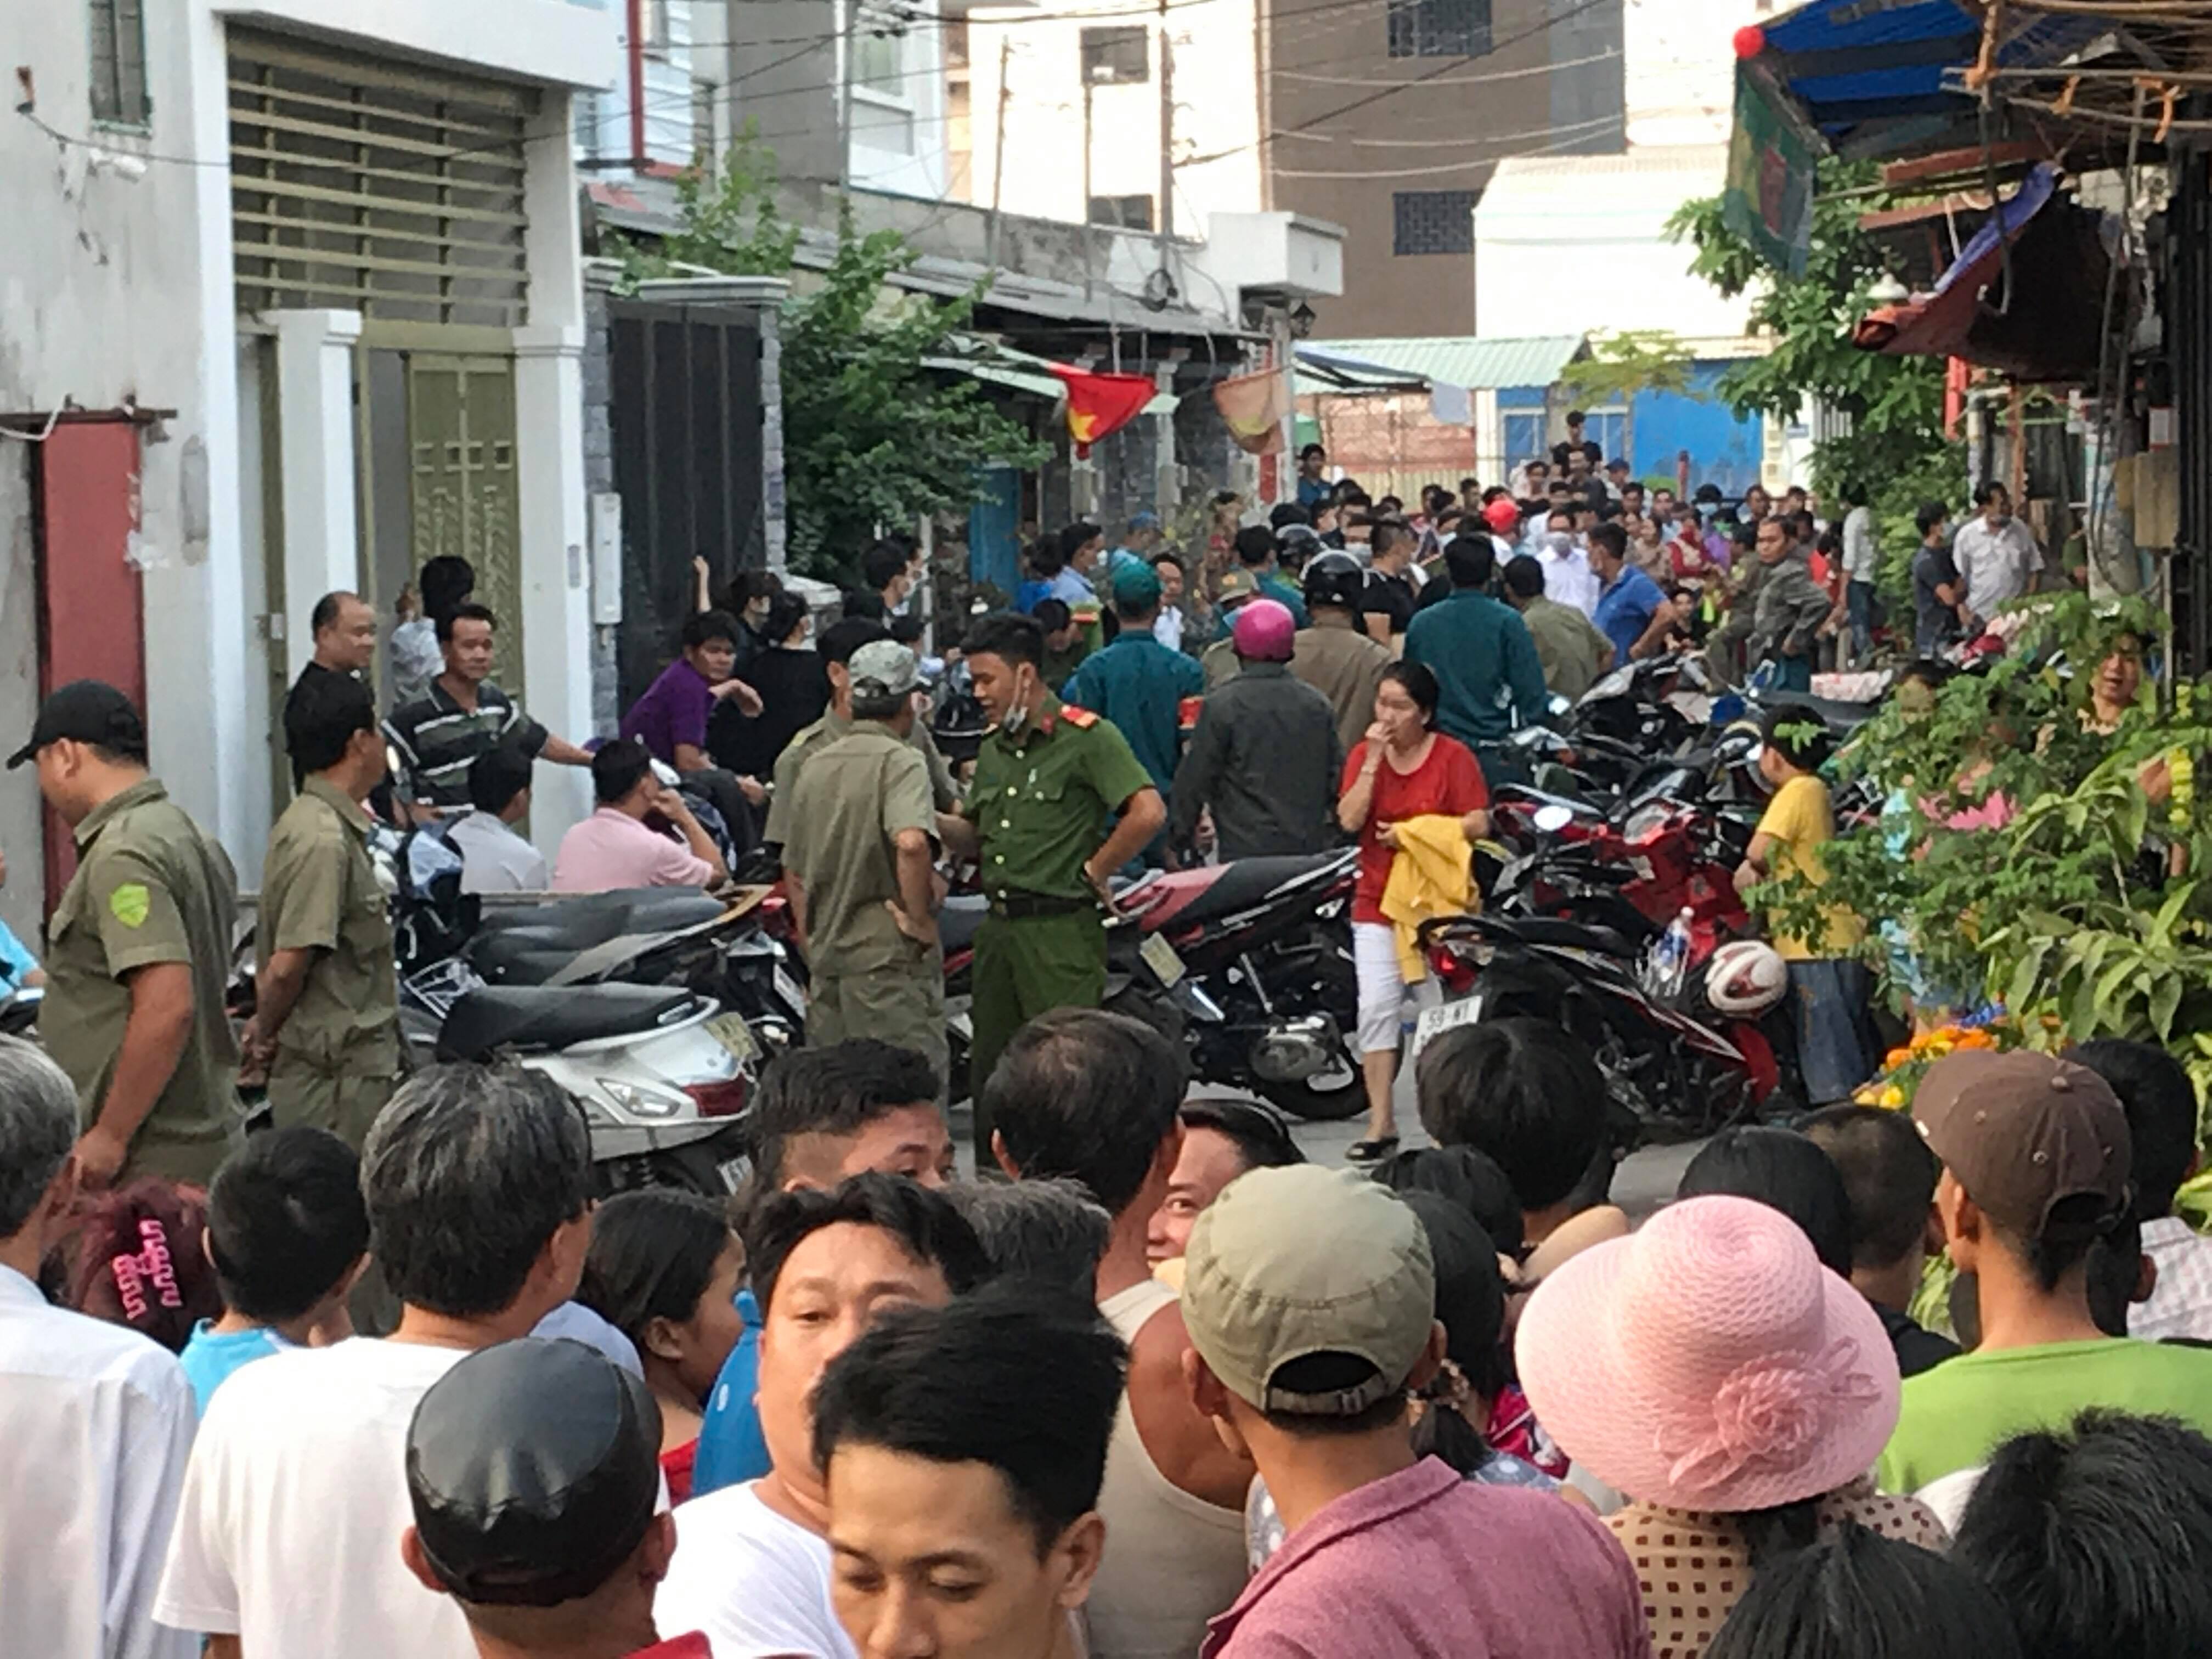 An ninh - Hình sự - Hung thủ sát hại 5 người ở Bình Tân rồi về Long An nhậu với bạn (Hình 2).